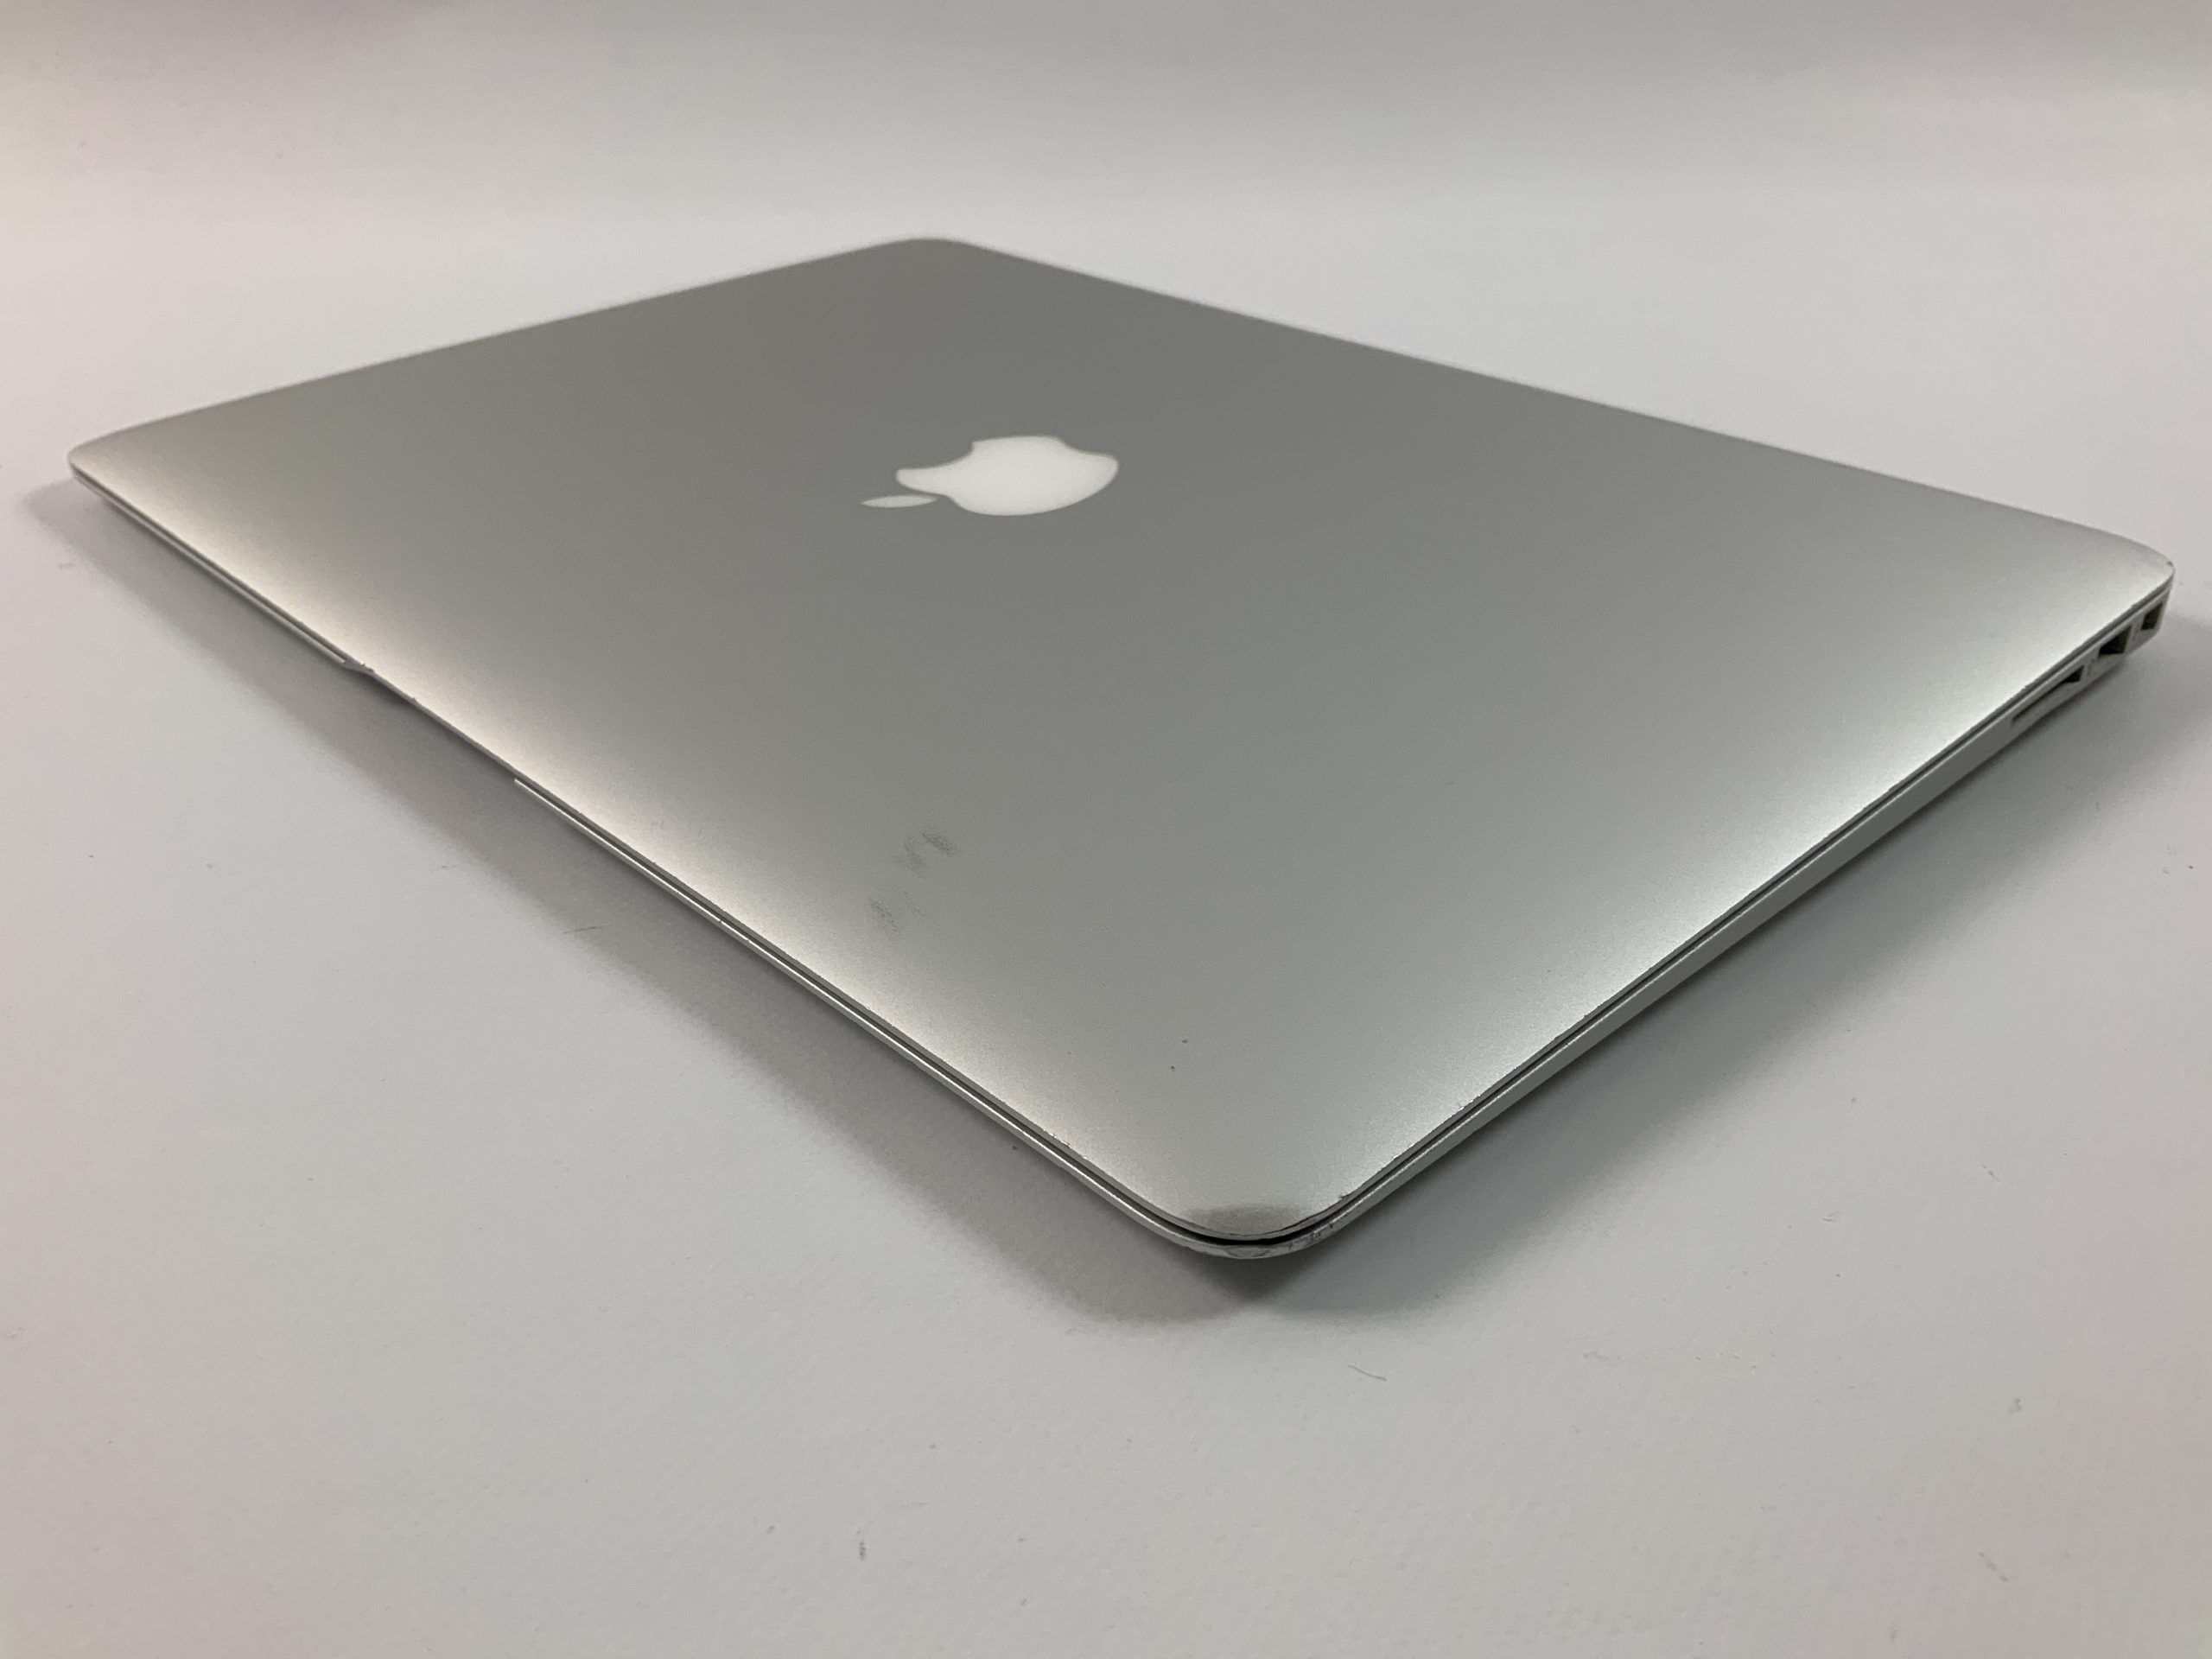 MacBook Air 13" Mid 2017 (Intel Core i5 1.8 GHz 8 GB RAM 256 GB SSD), Intel Core i5 1.8 GHz, 8 GB RAM, 256 GB SSD, Afbeelding 3